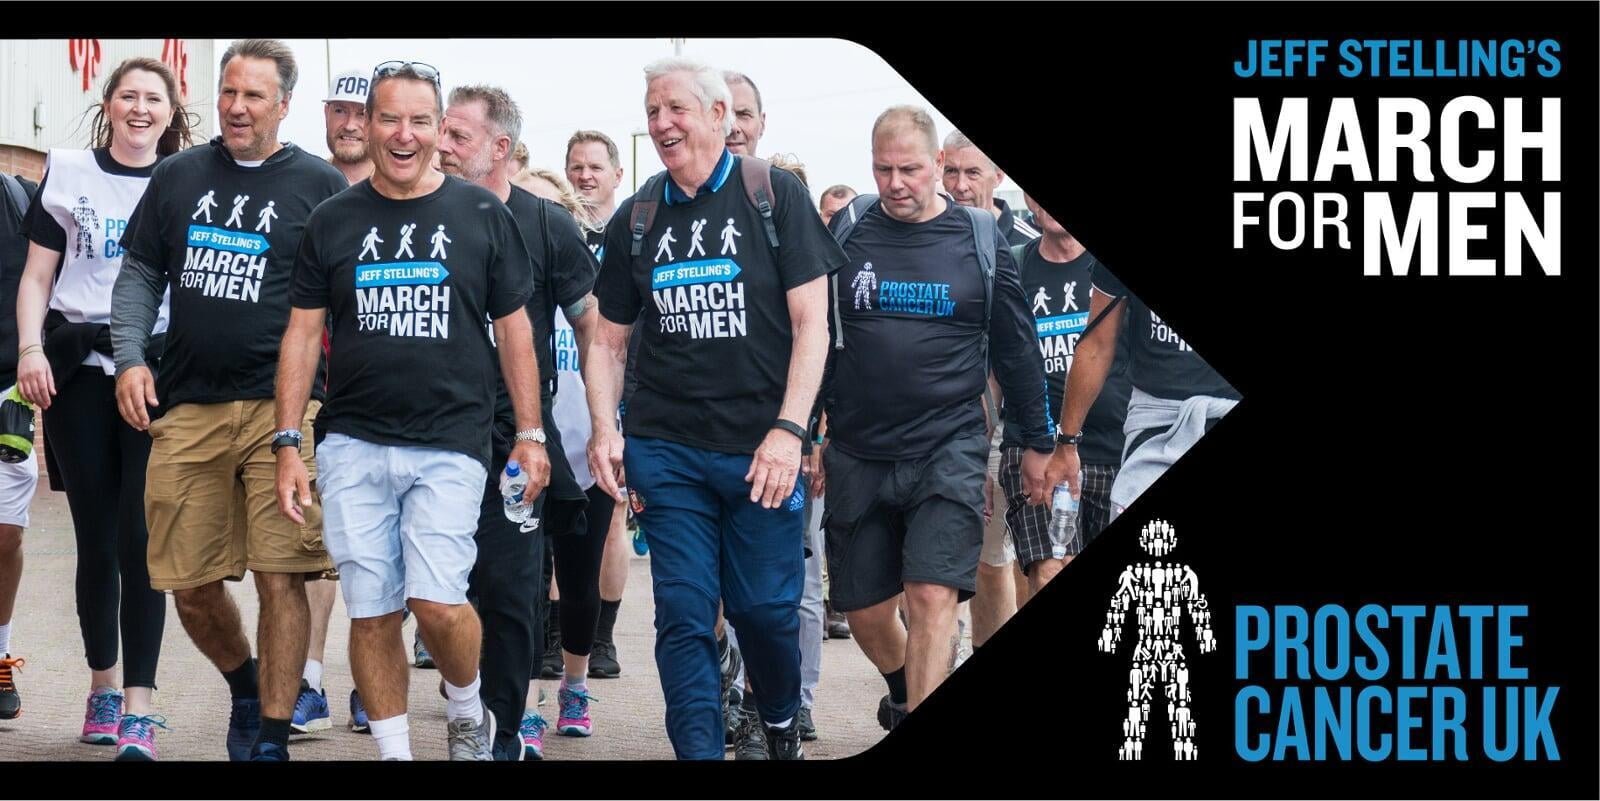 Prostate Cancer UK Fundraiser Image